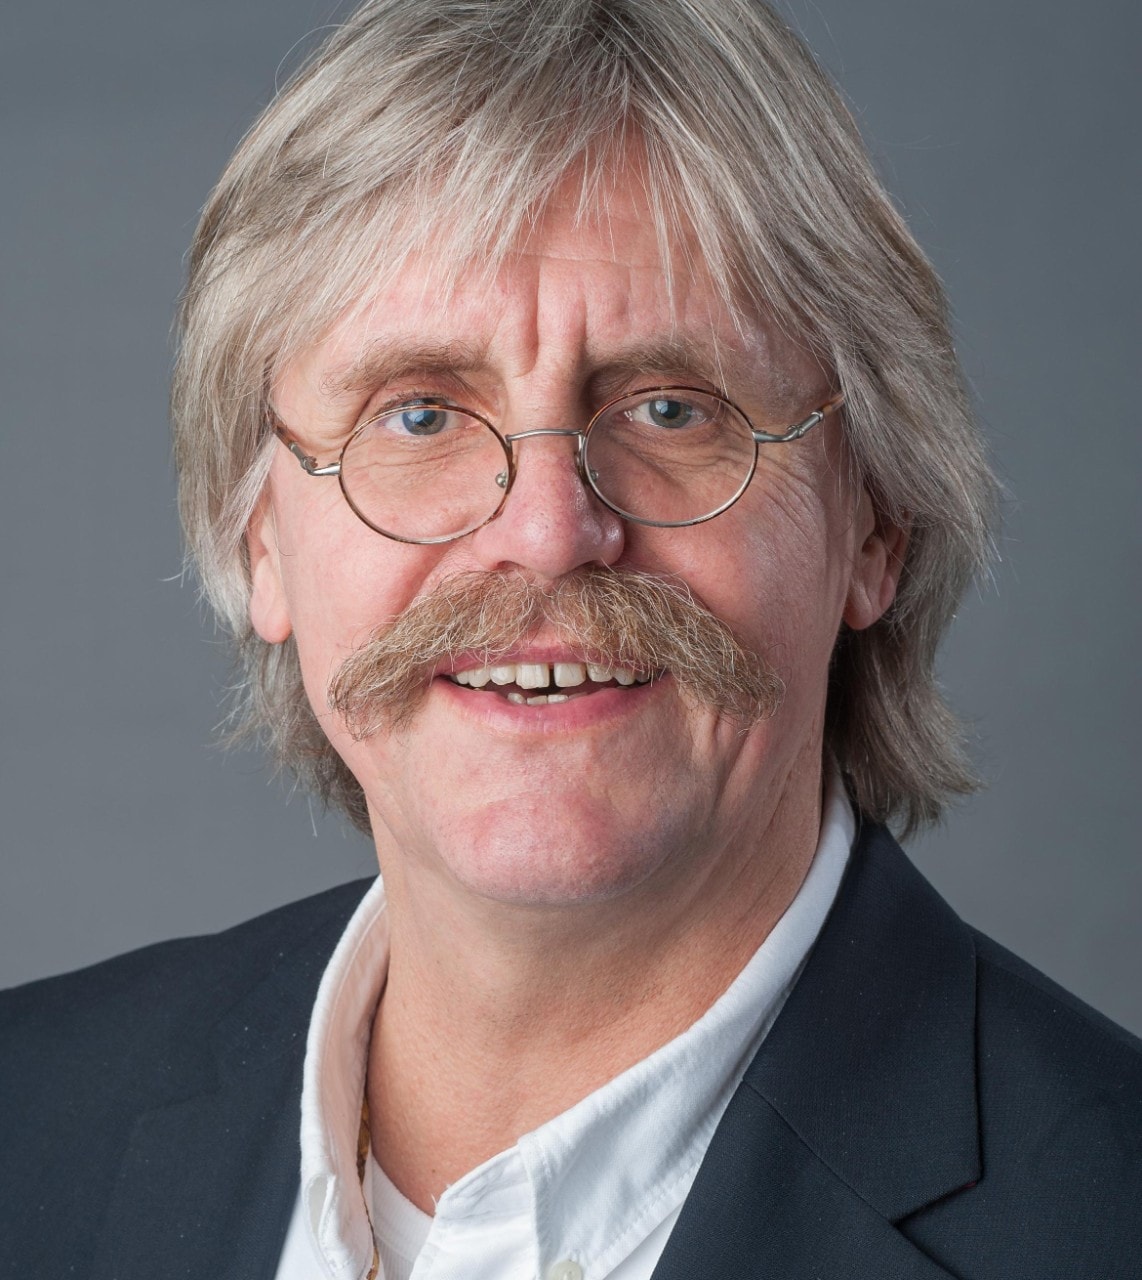 Professor Schedlowski, Manfred